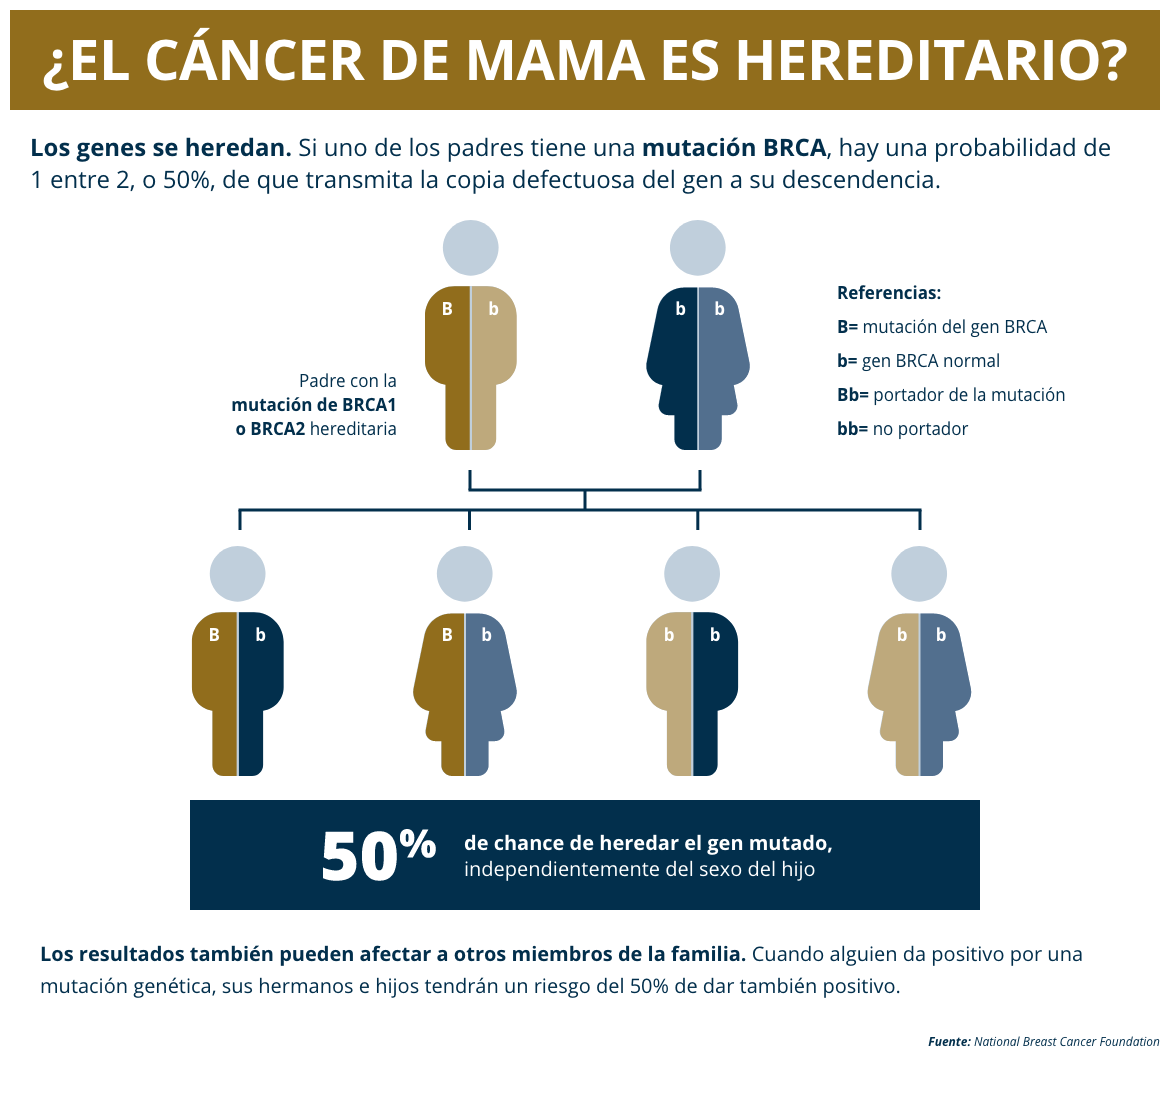 Determinando los genes que pueden hacer que el cáncer de mama sea hereditario